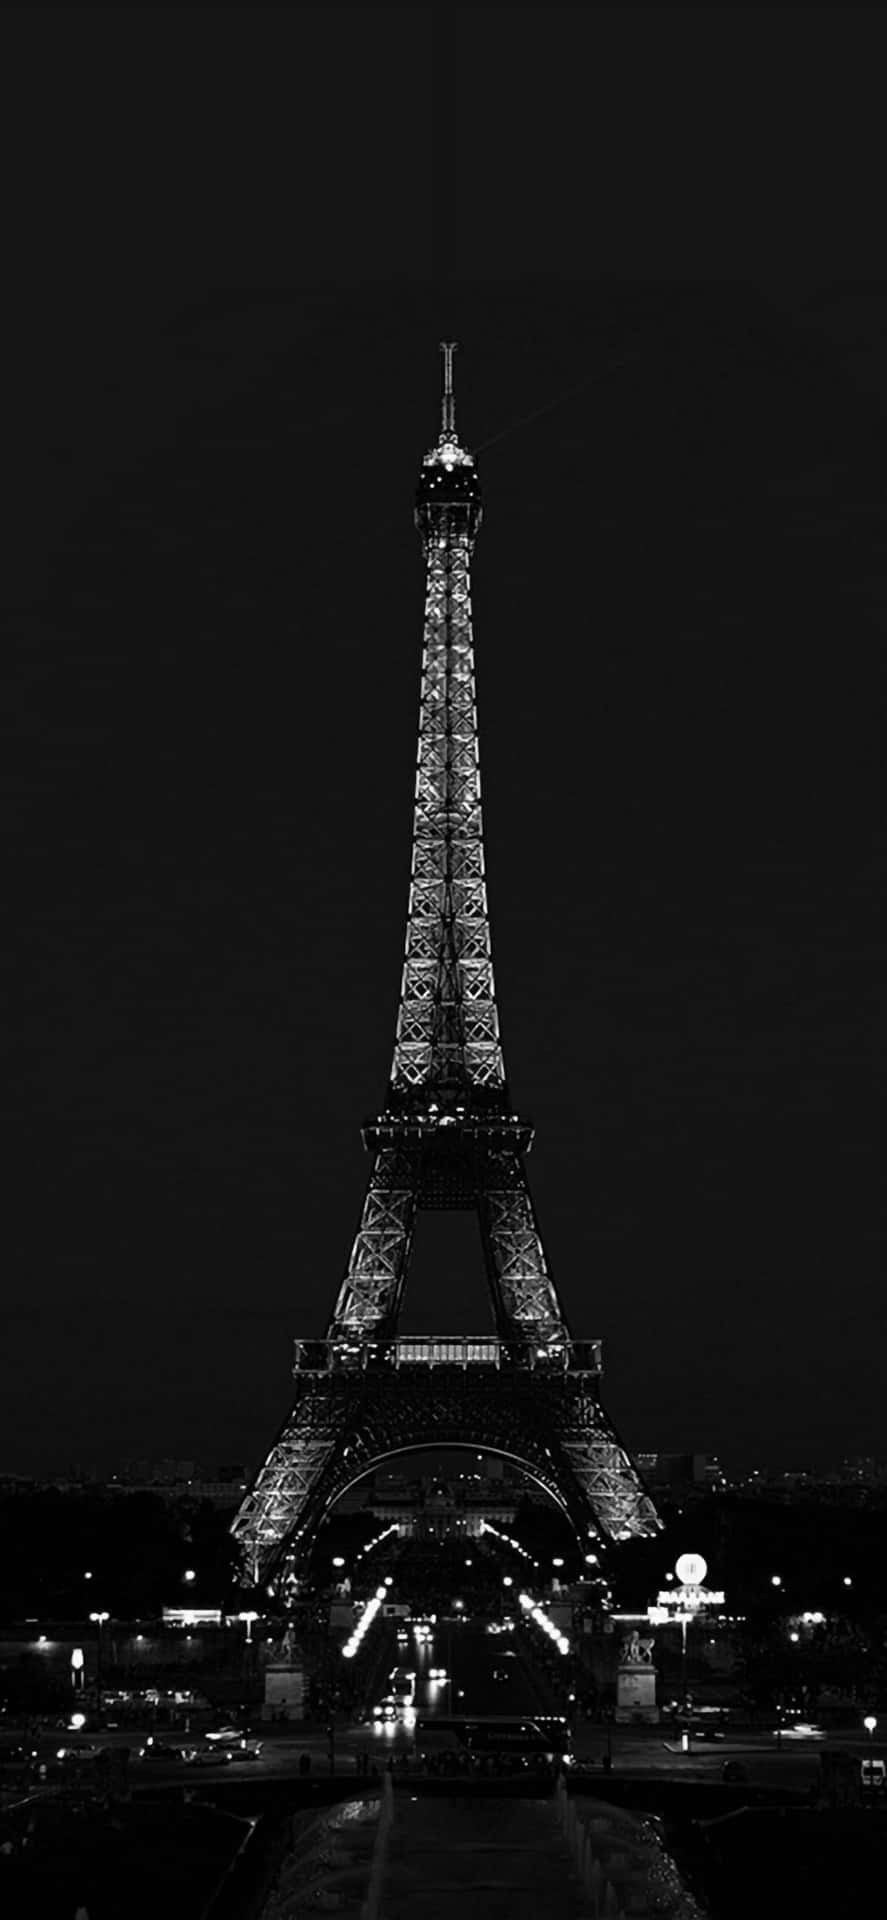 Eiffeltårnetbilleder Af Mørk Himmel.